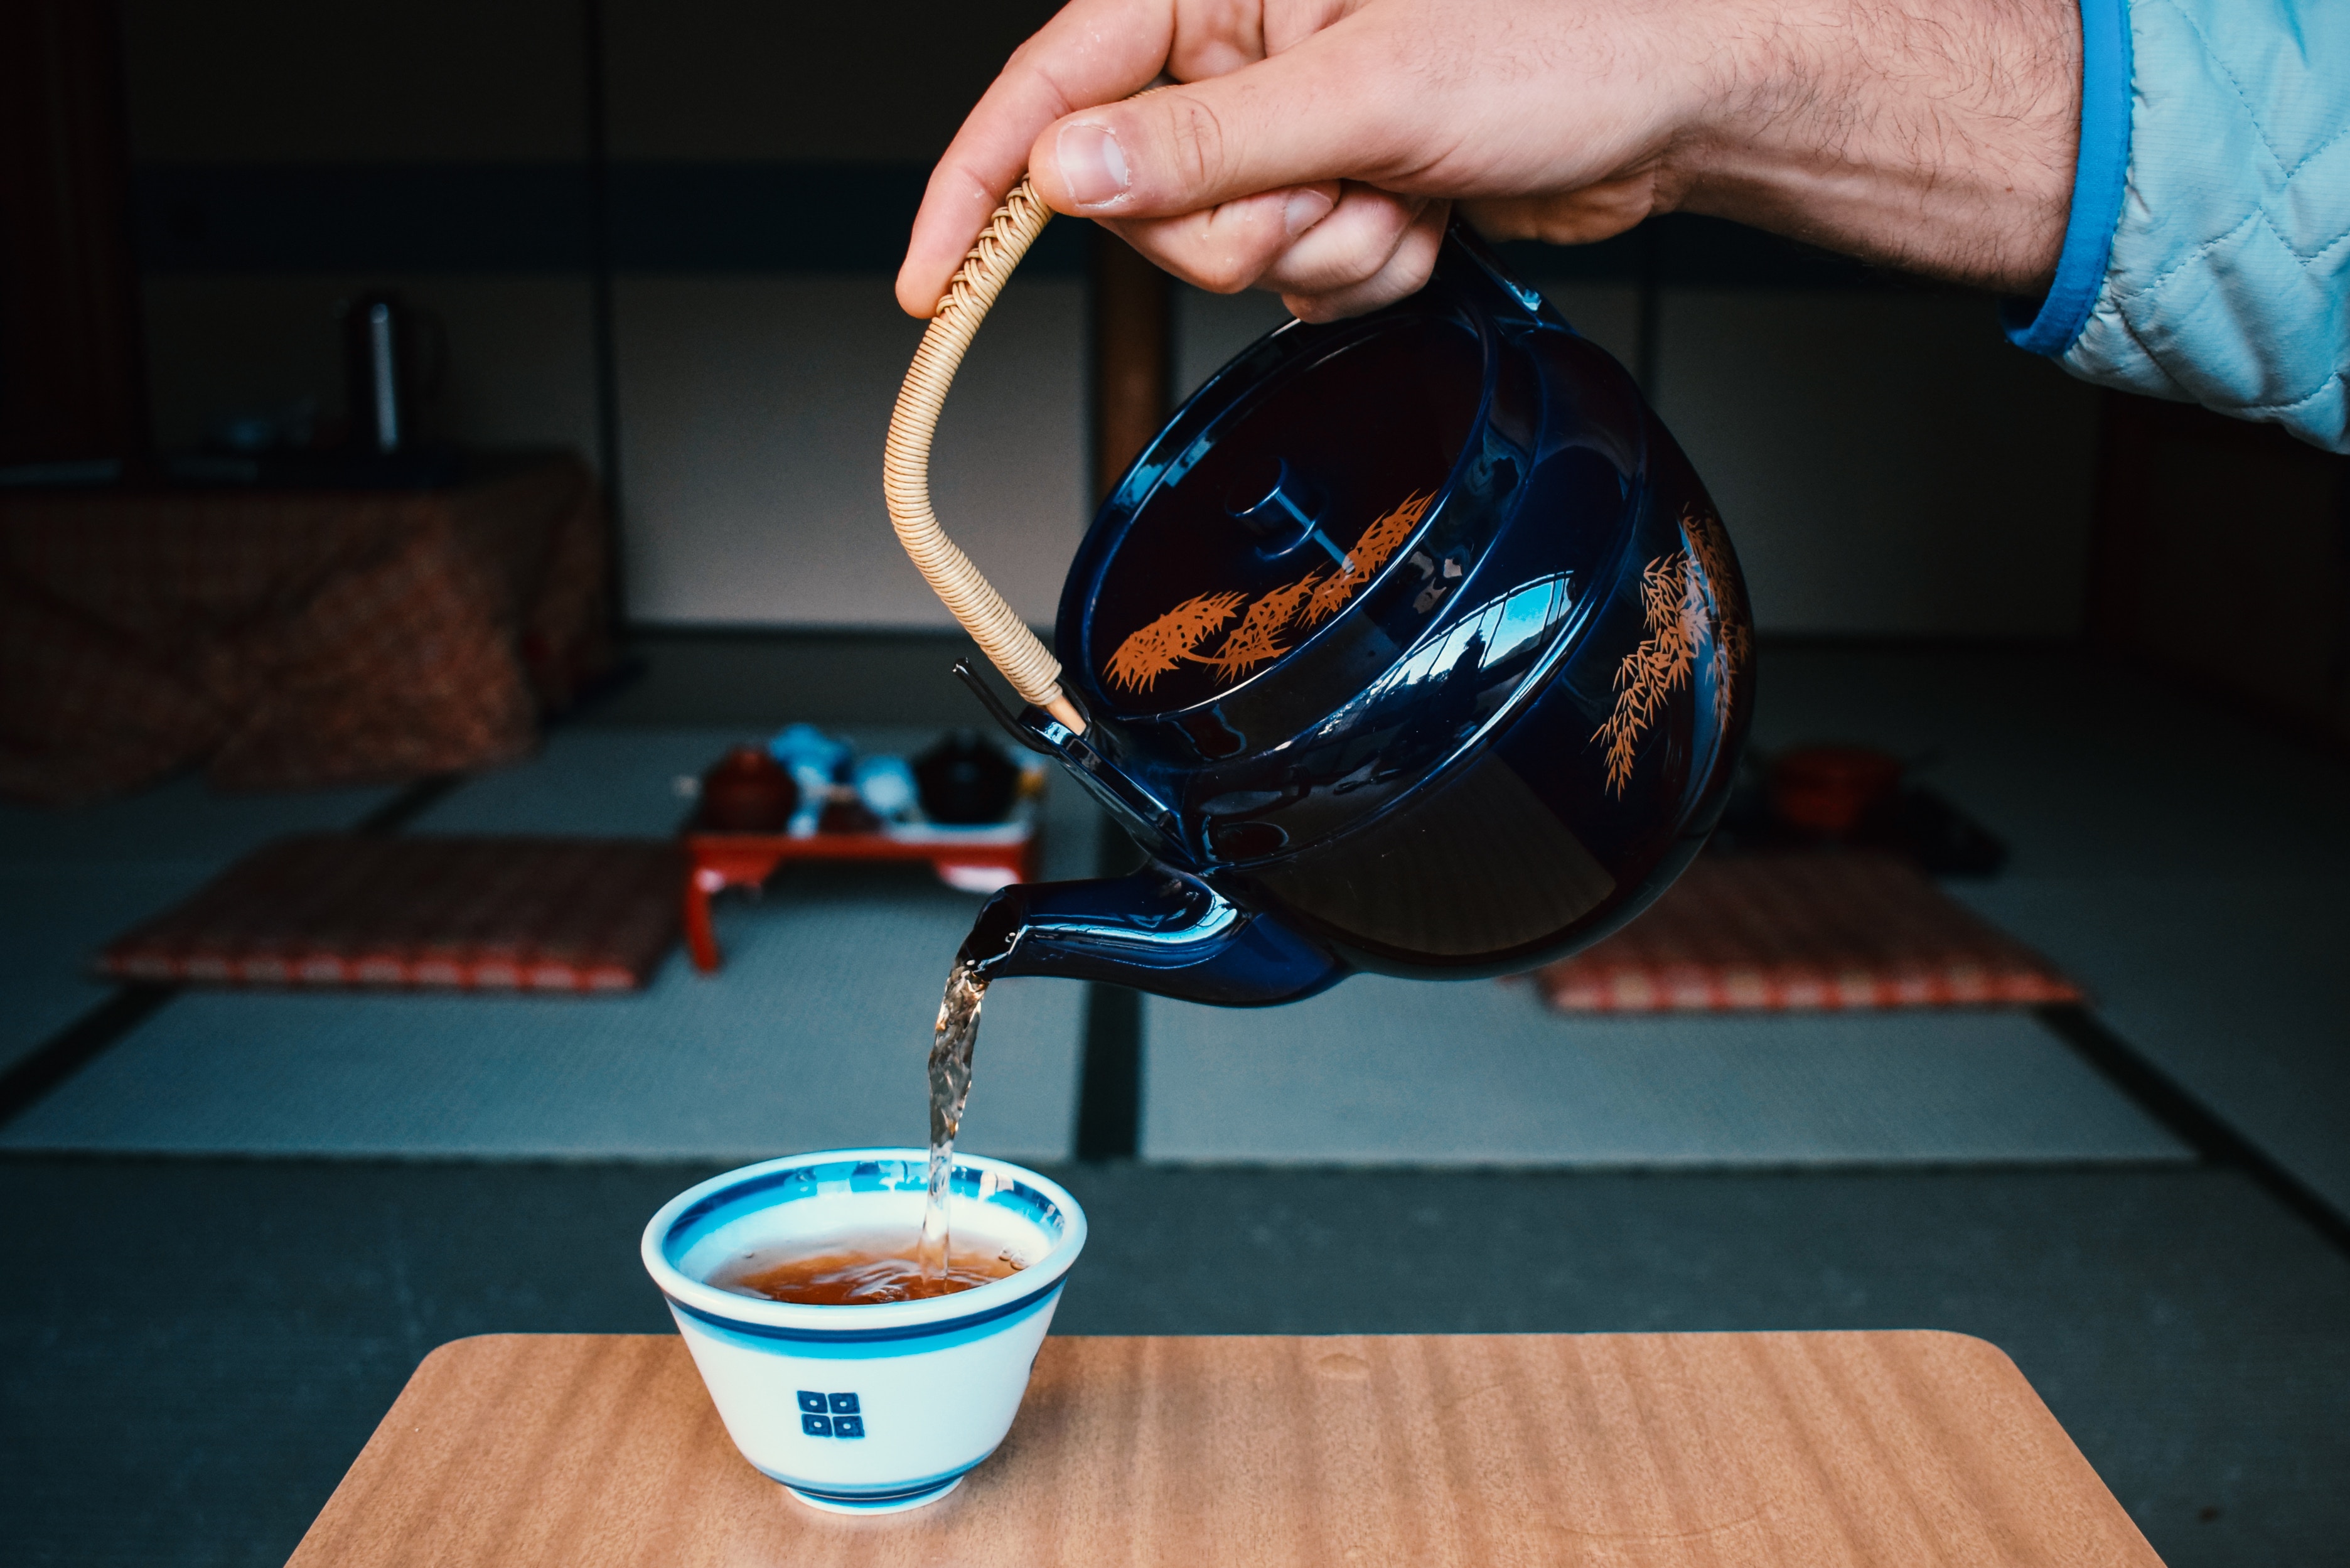 une main verse du thé dans une tasse avec service asiatique conte la tasse de thé conte